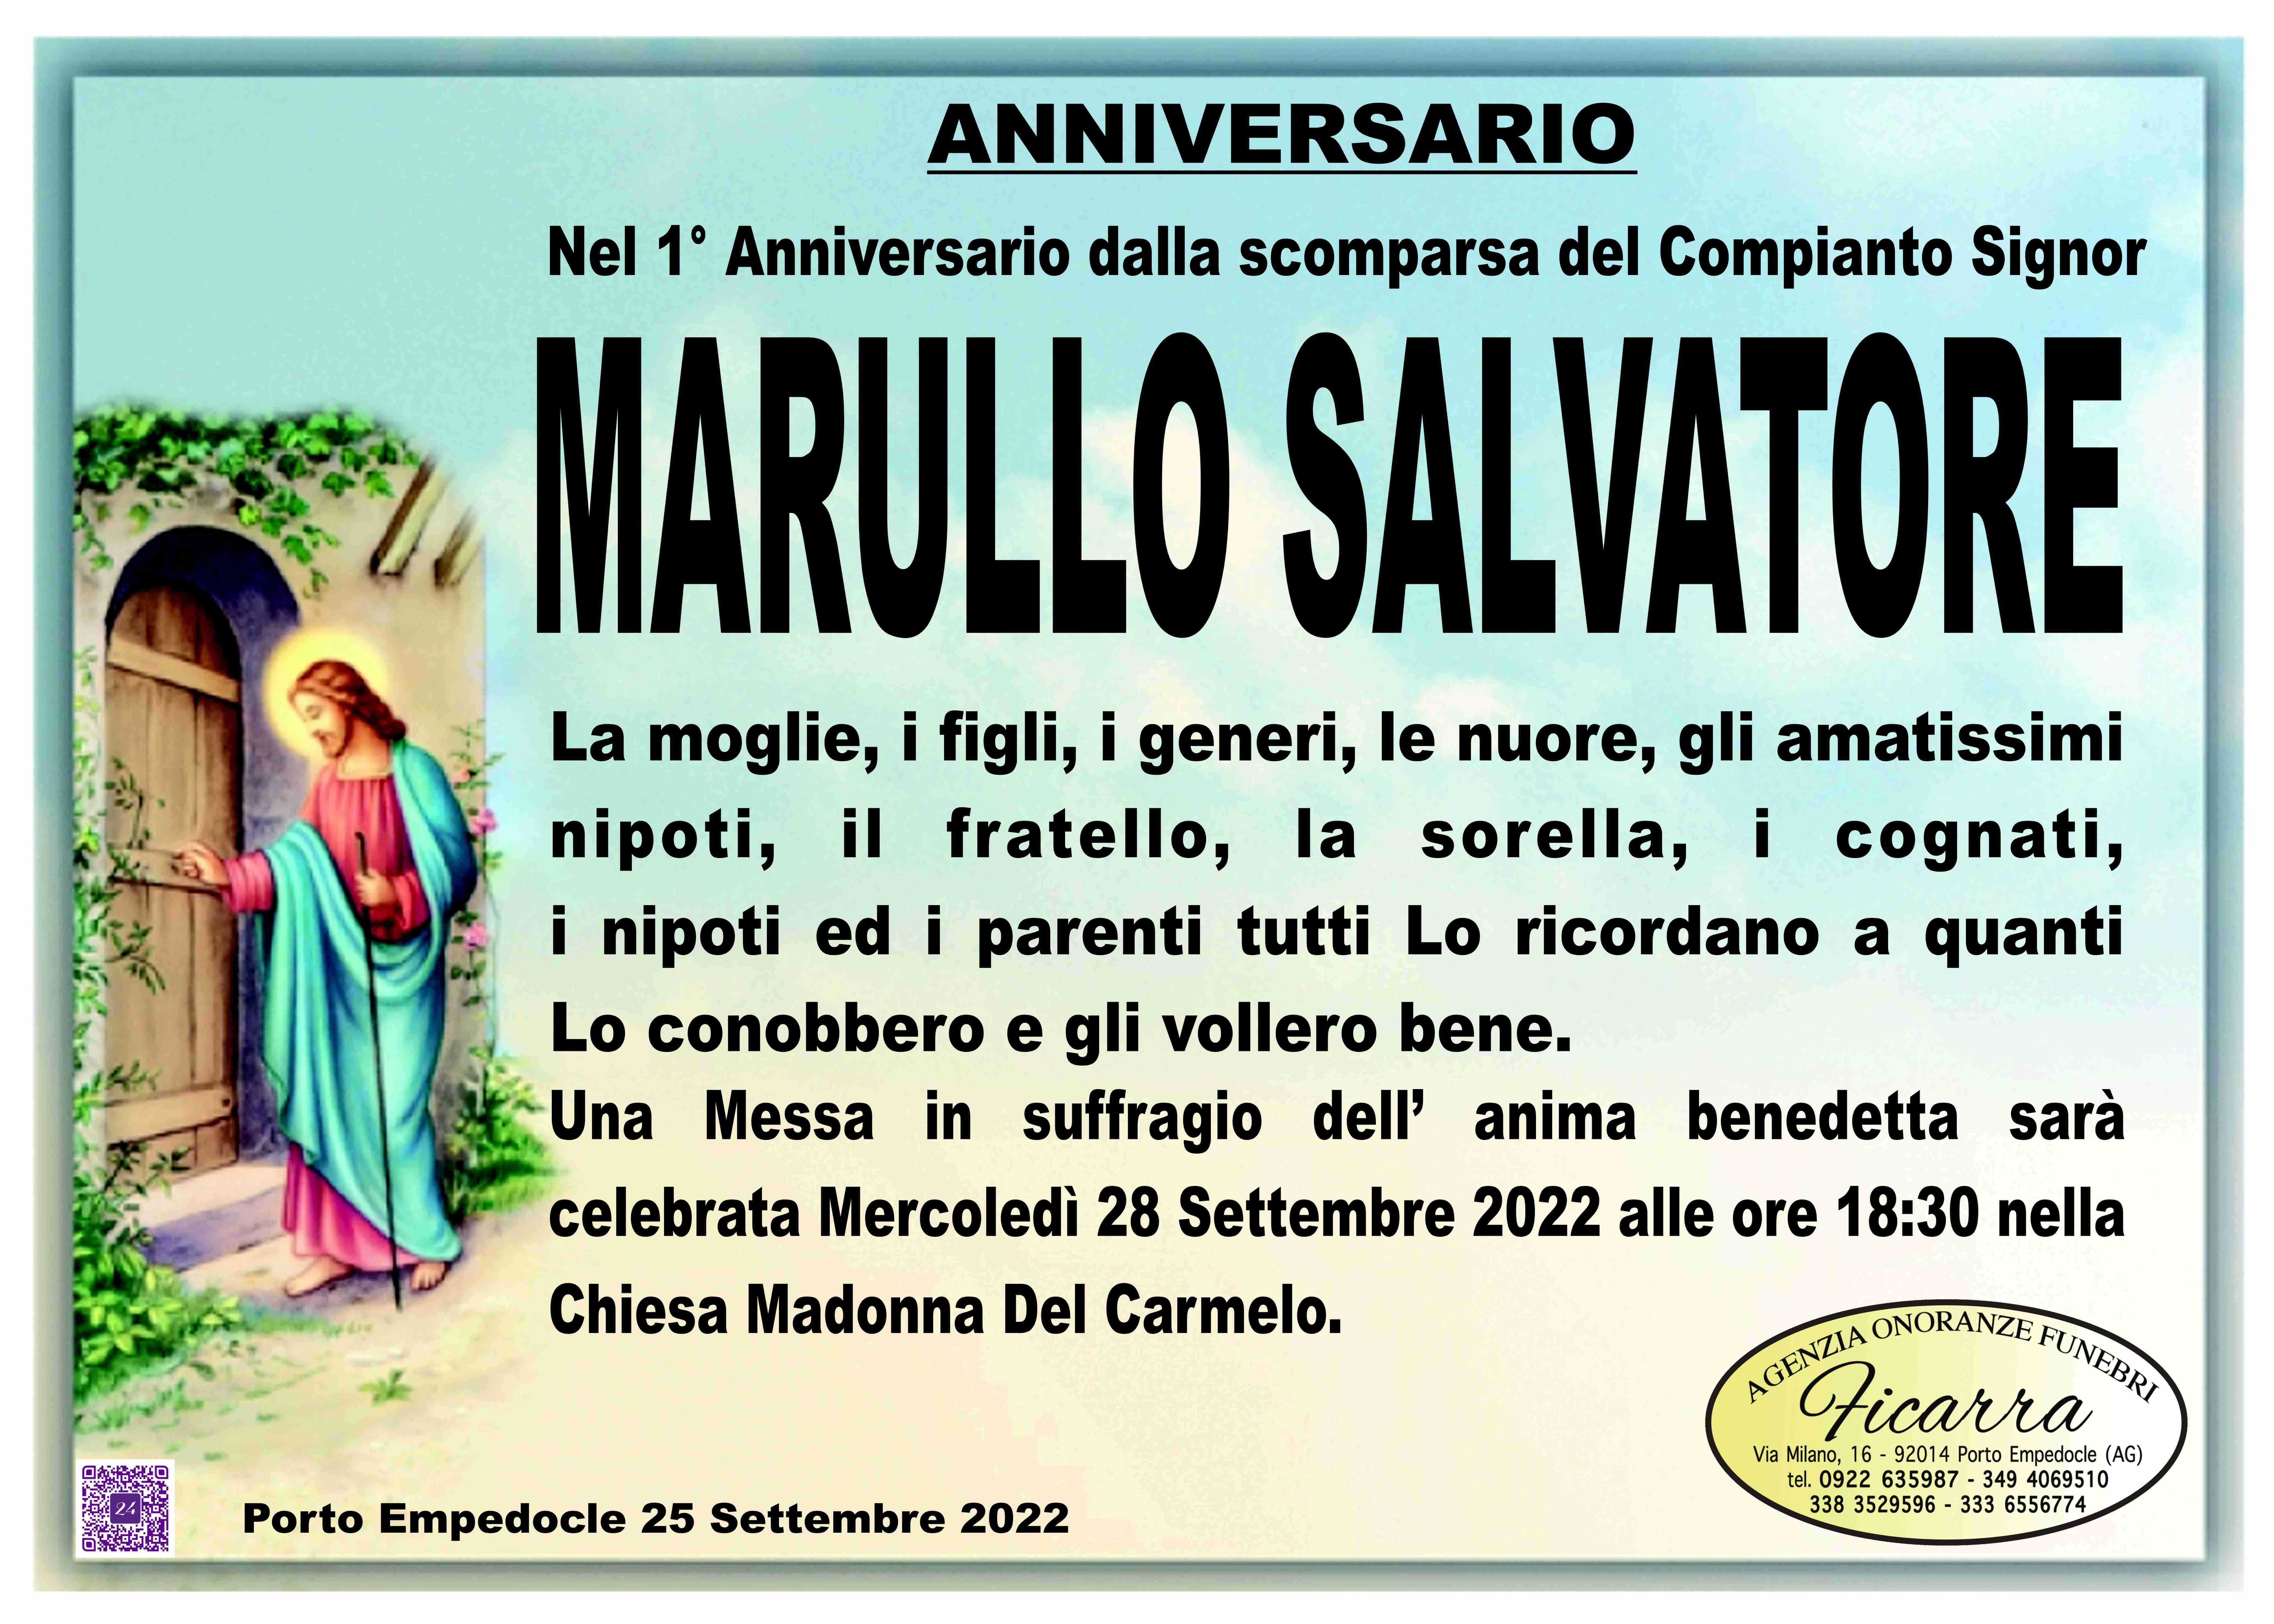 Salvatore Marullo